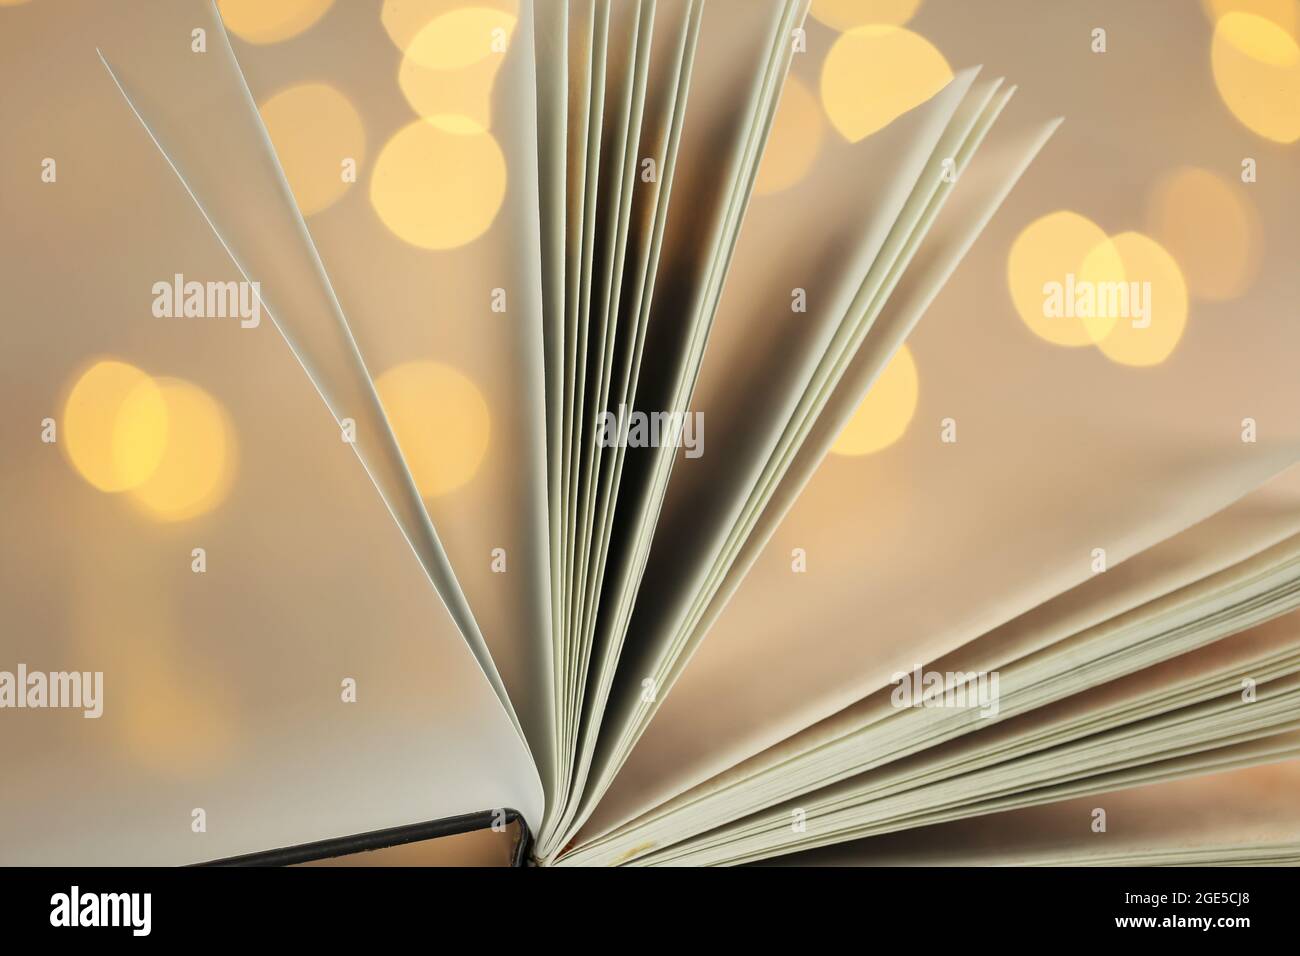 Bücher lesen. Buchseiten Nahaufnahme auf leuchtendem Bokeh-Hintergrund.Winterbücher. Weihnachtsbücher.Winter gemütliches Lesen. Stockfoto